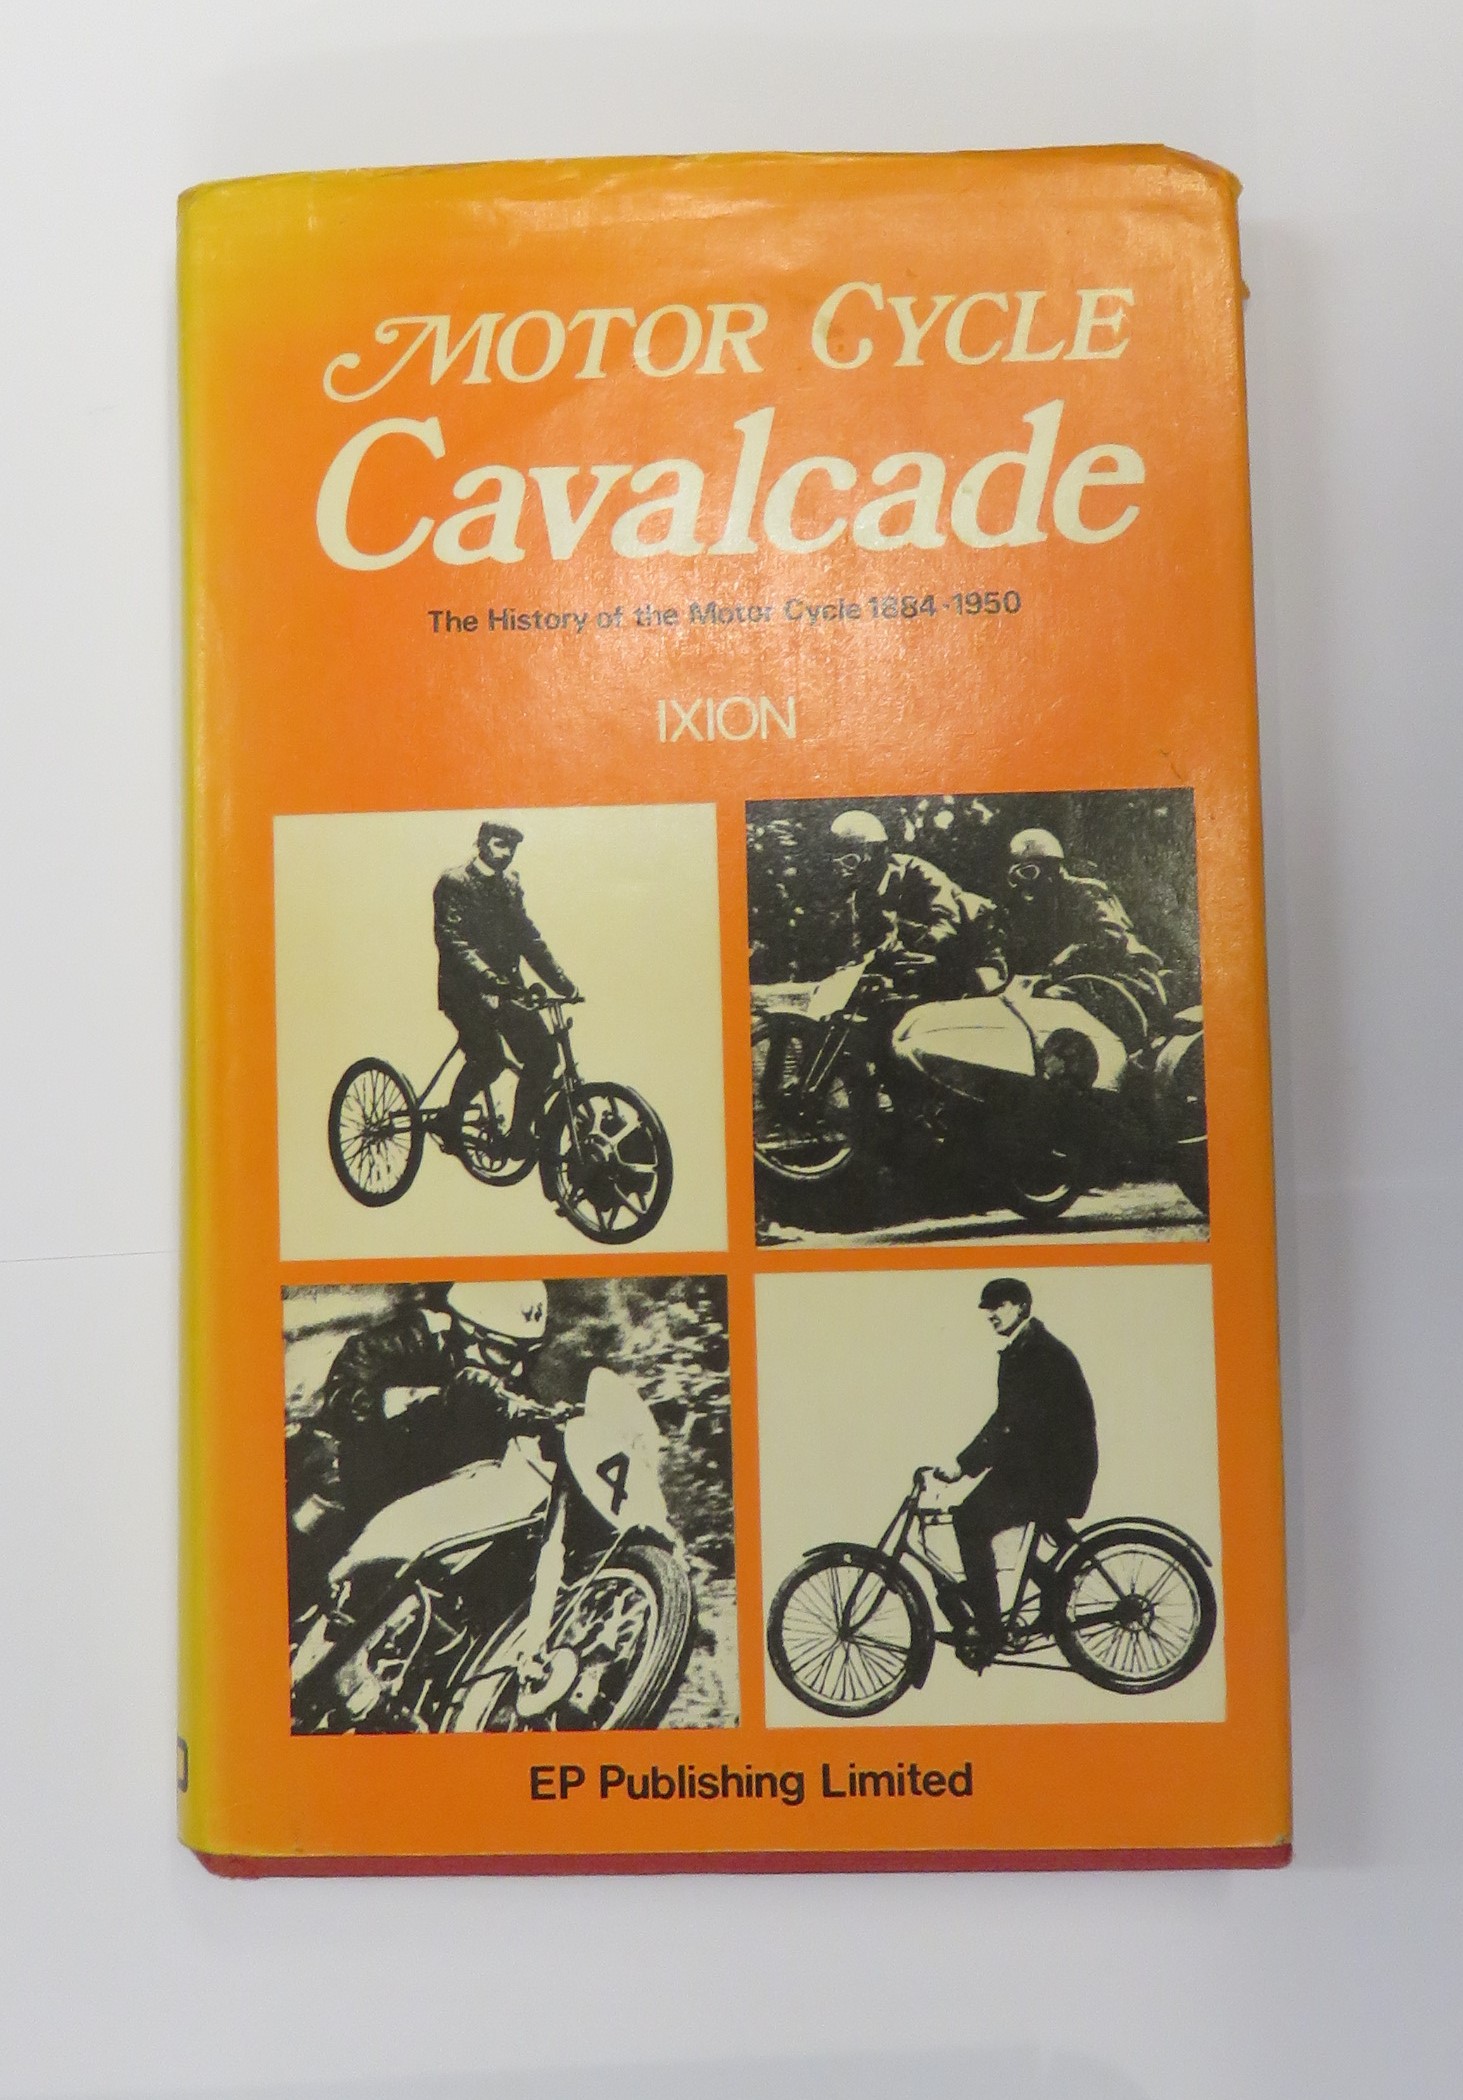 Motor Cycle Cavalcade